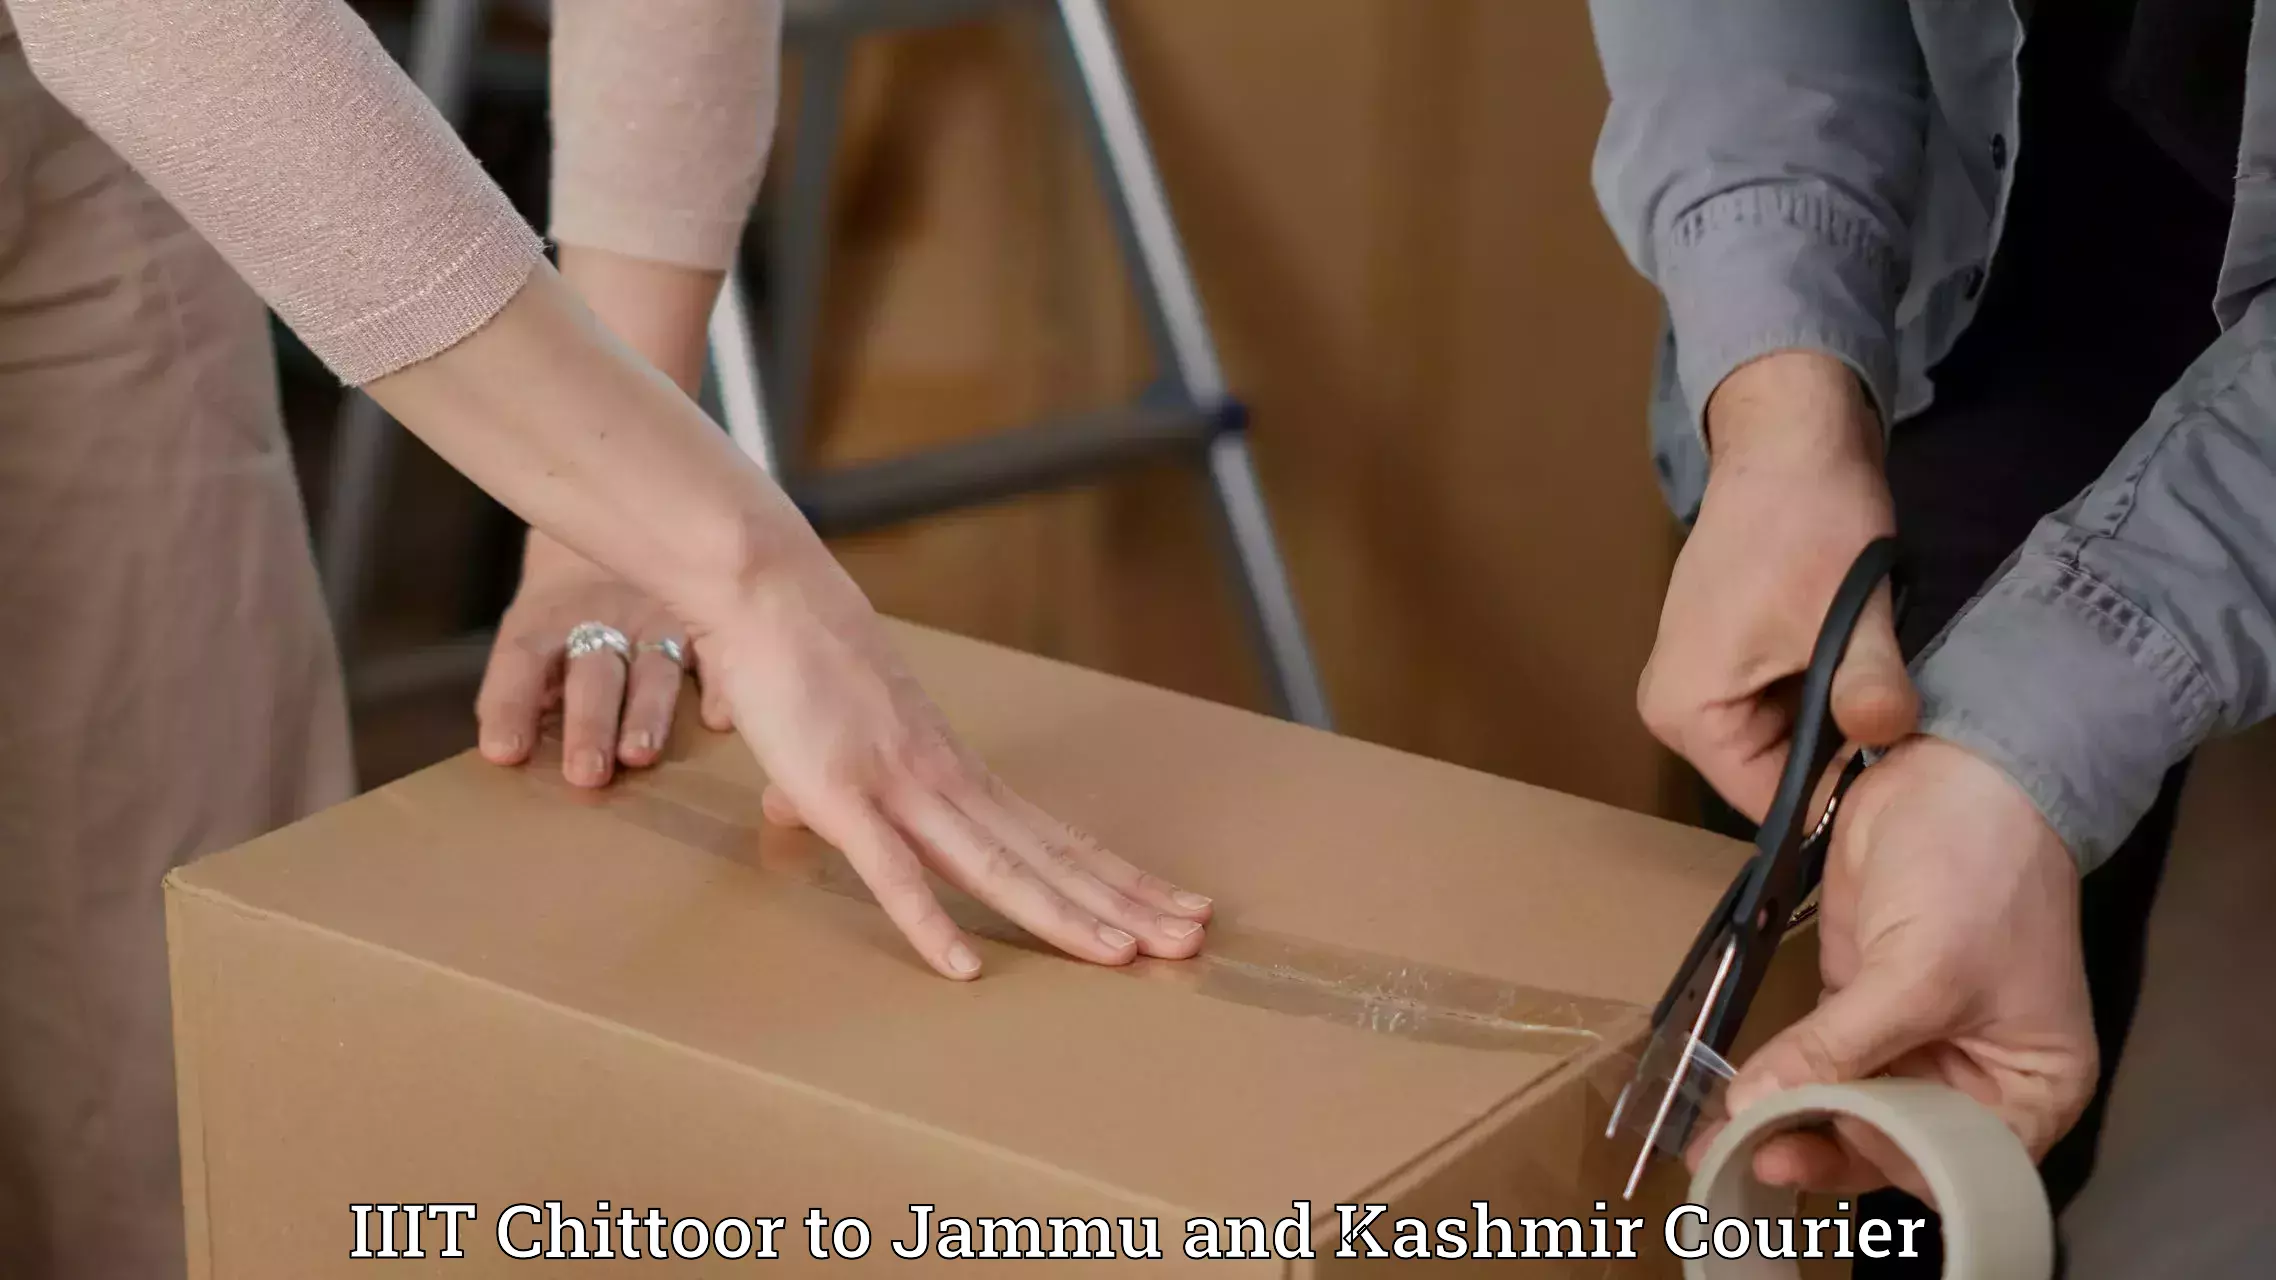 Nationwide courier service IIIT Chittoor to Srinagar Kashmir